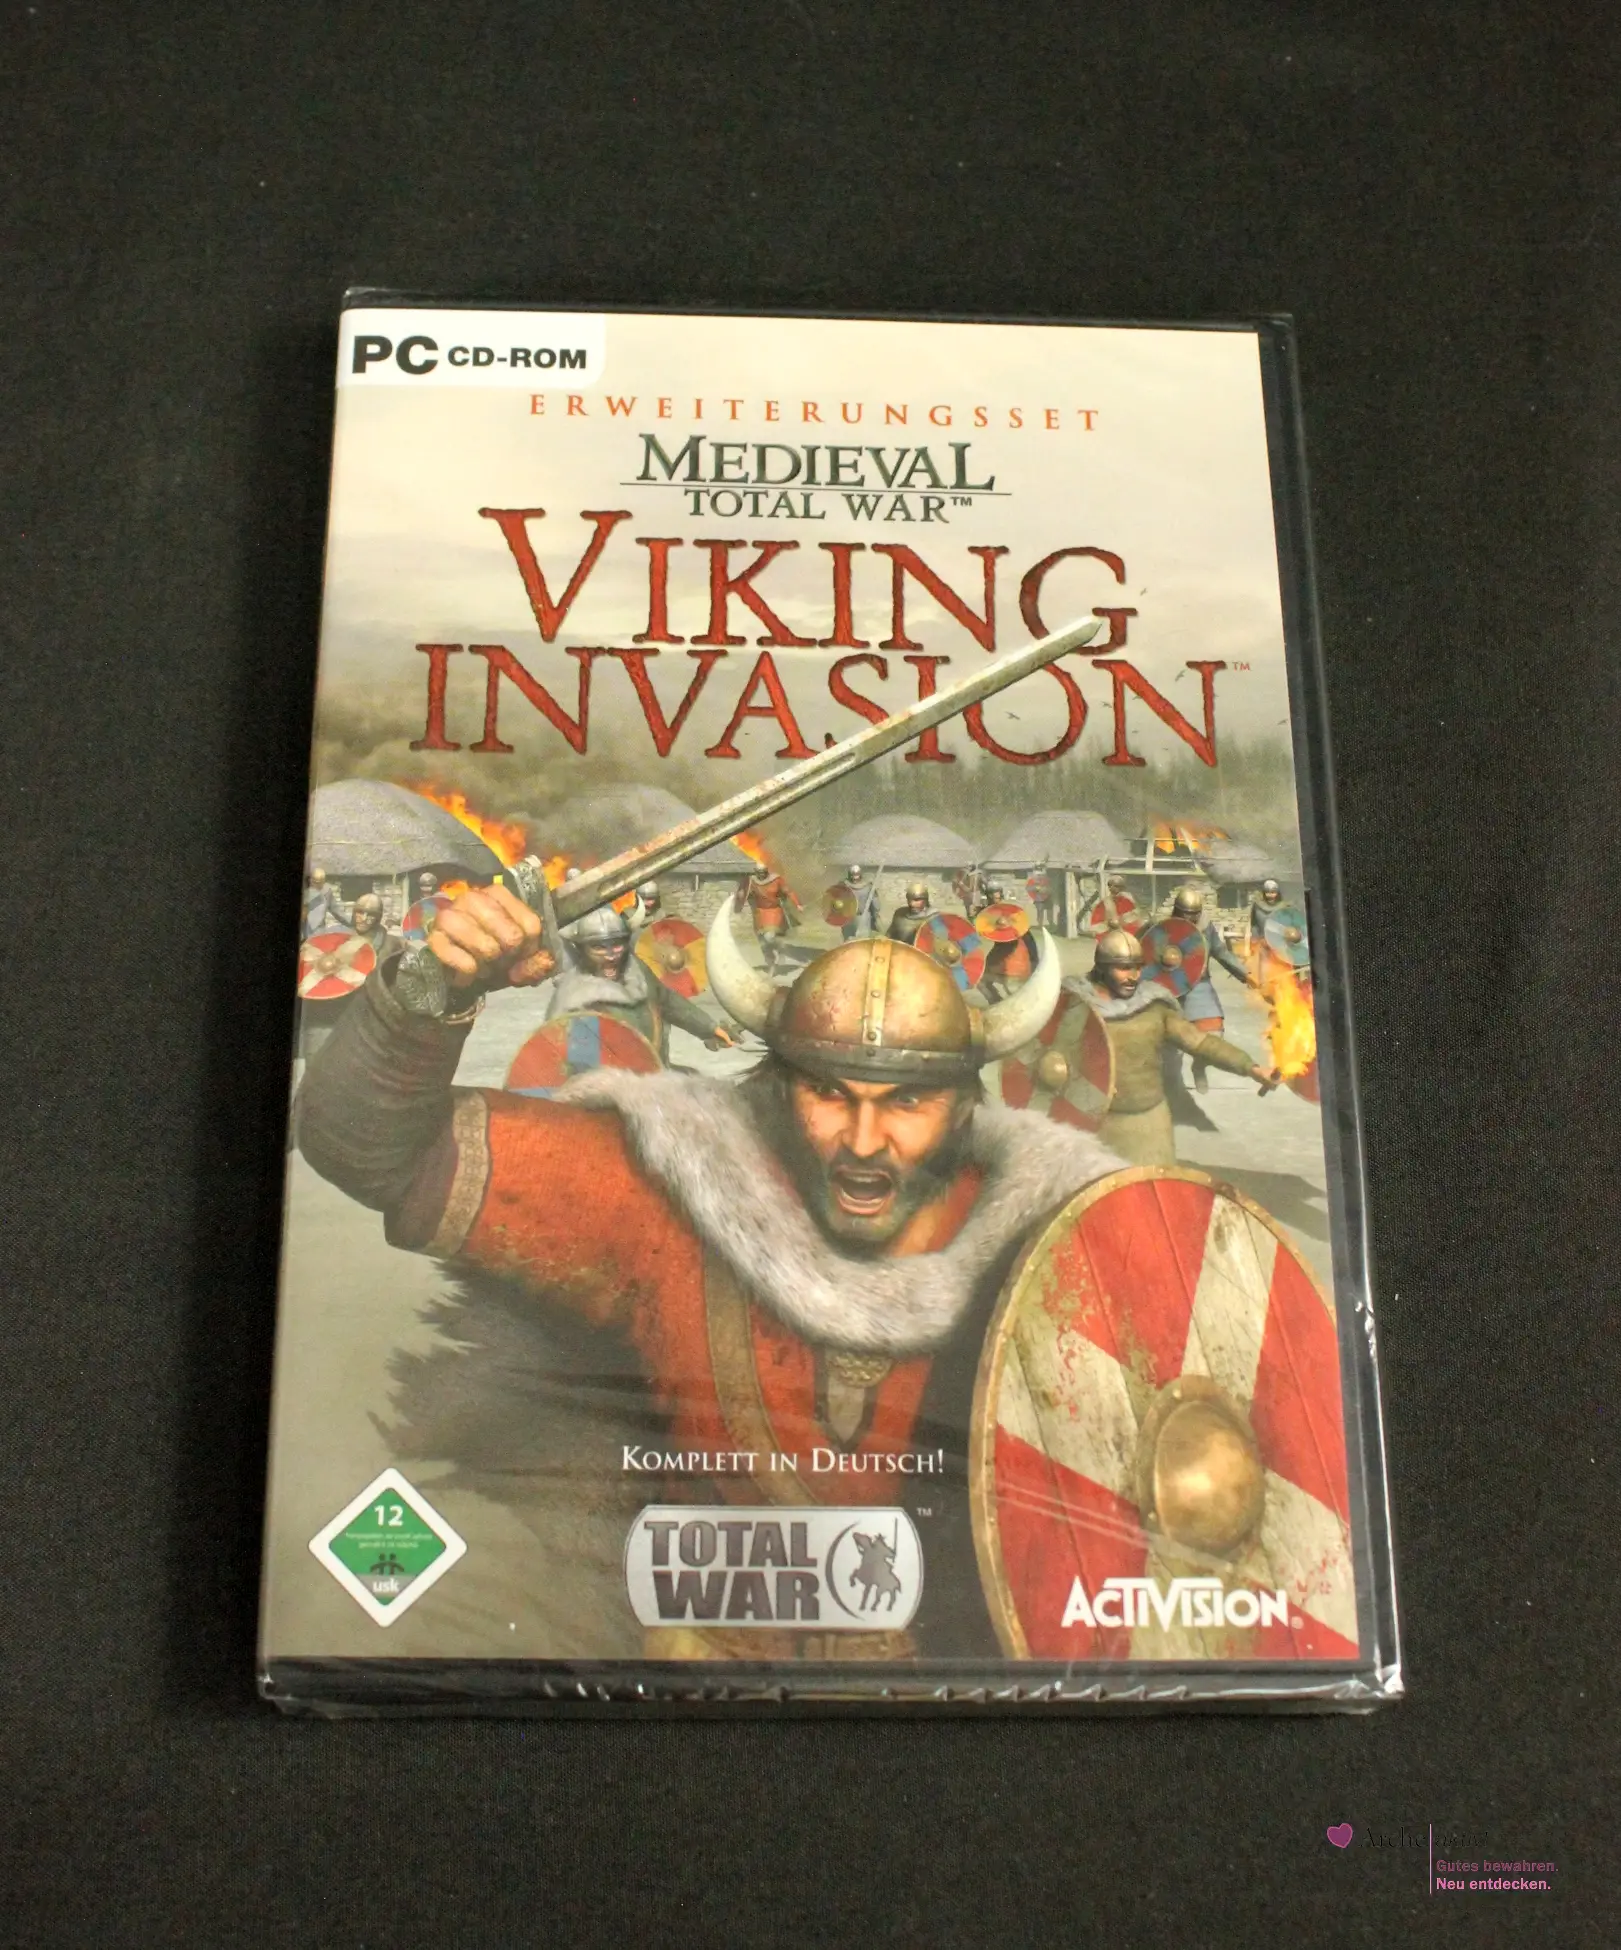 Medieval: Total War - Viking Invasion - Erweiterungsset - PC CD-ROM, Neu in OVP